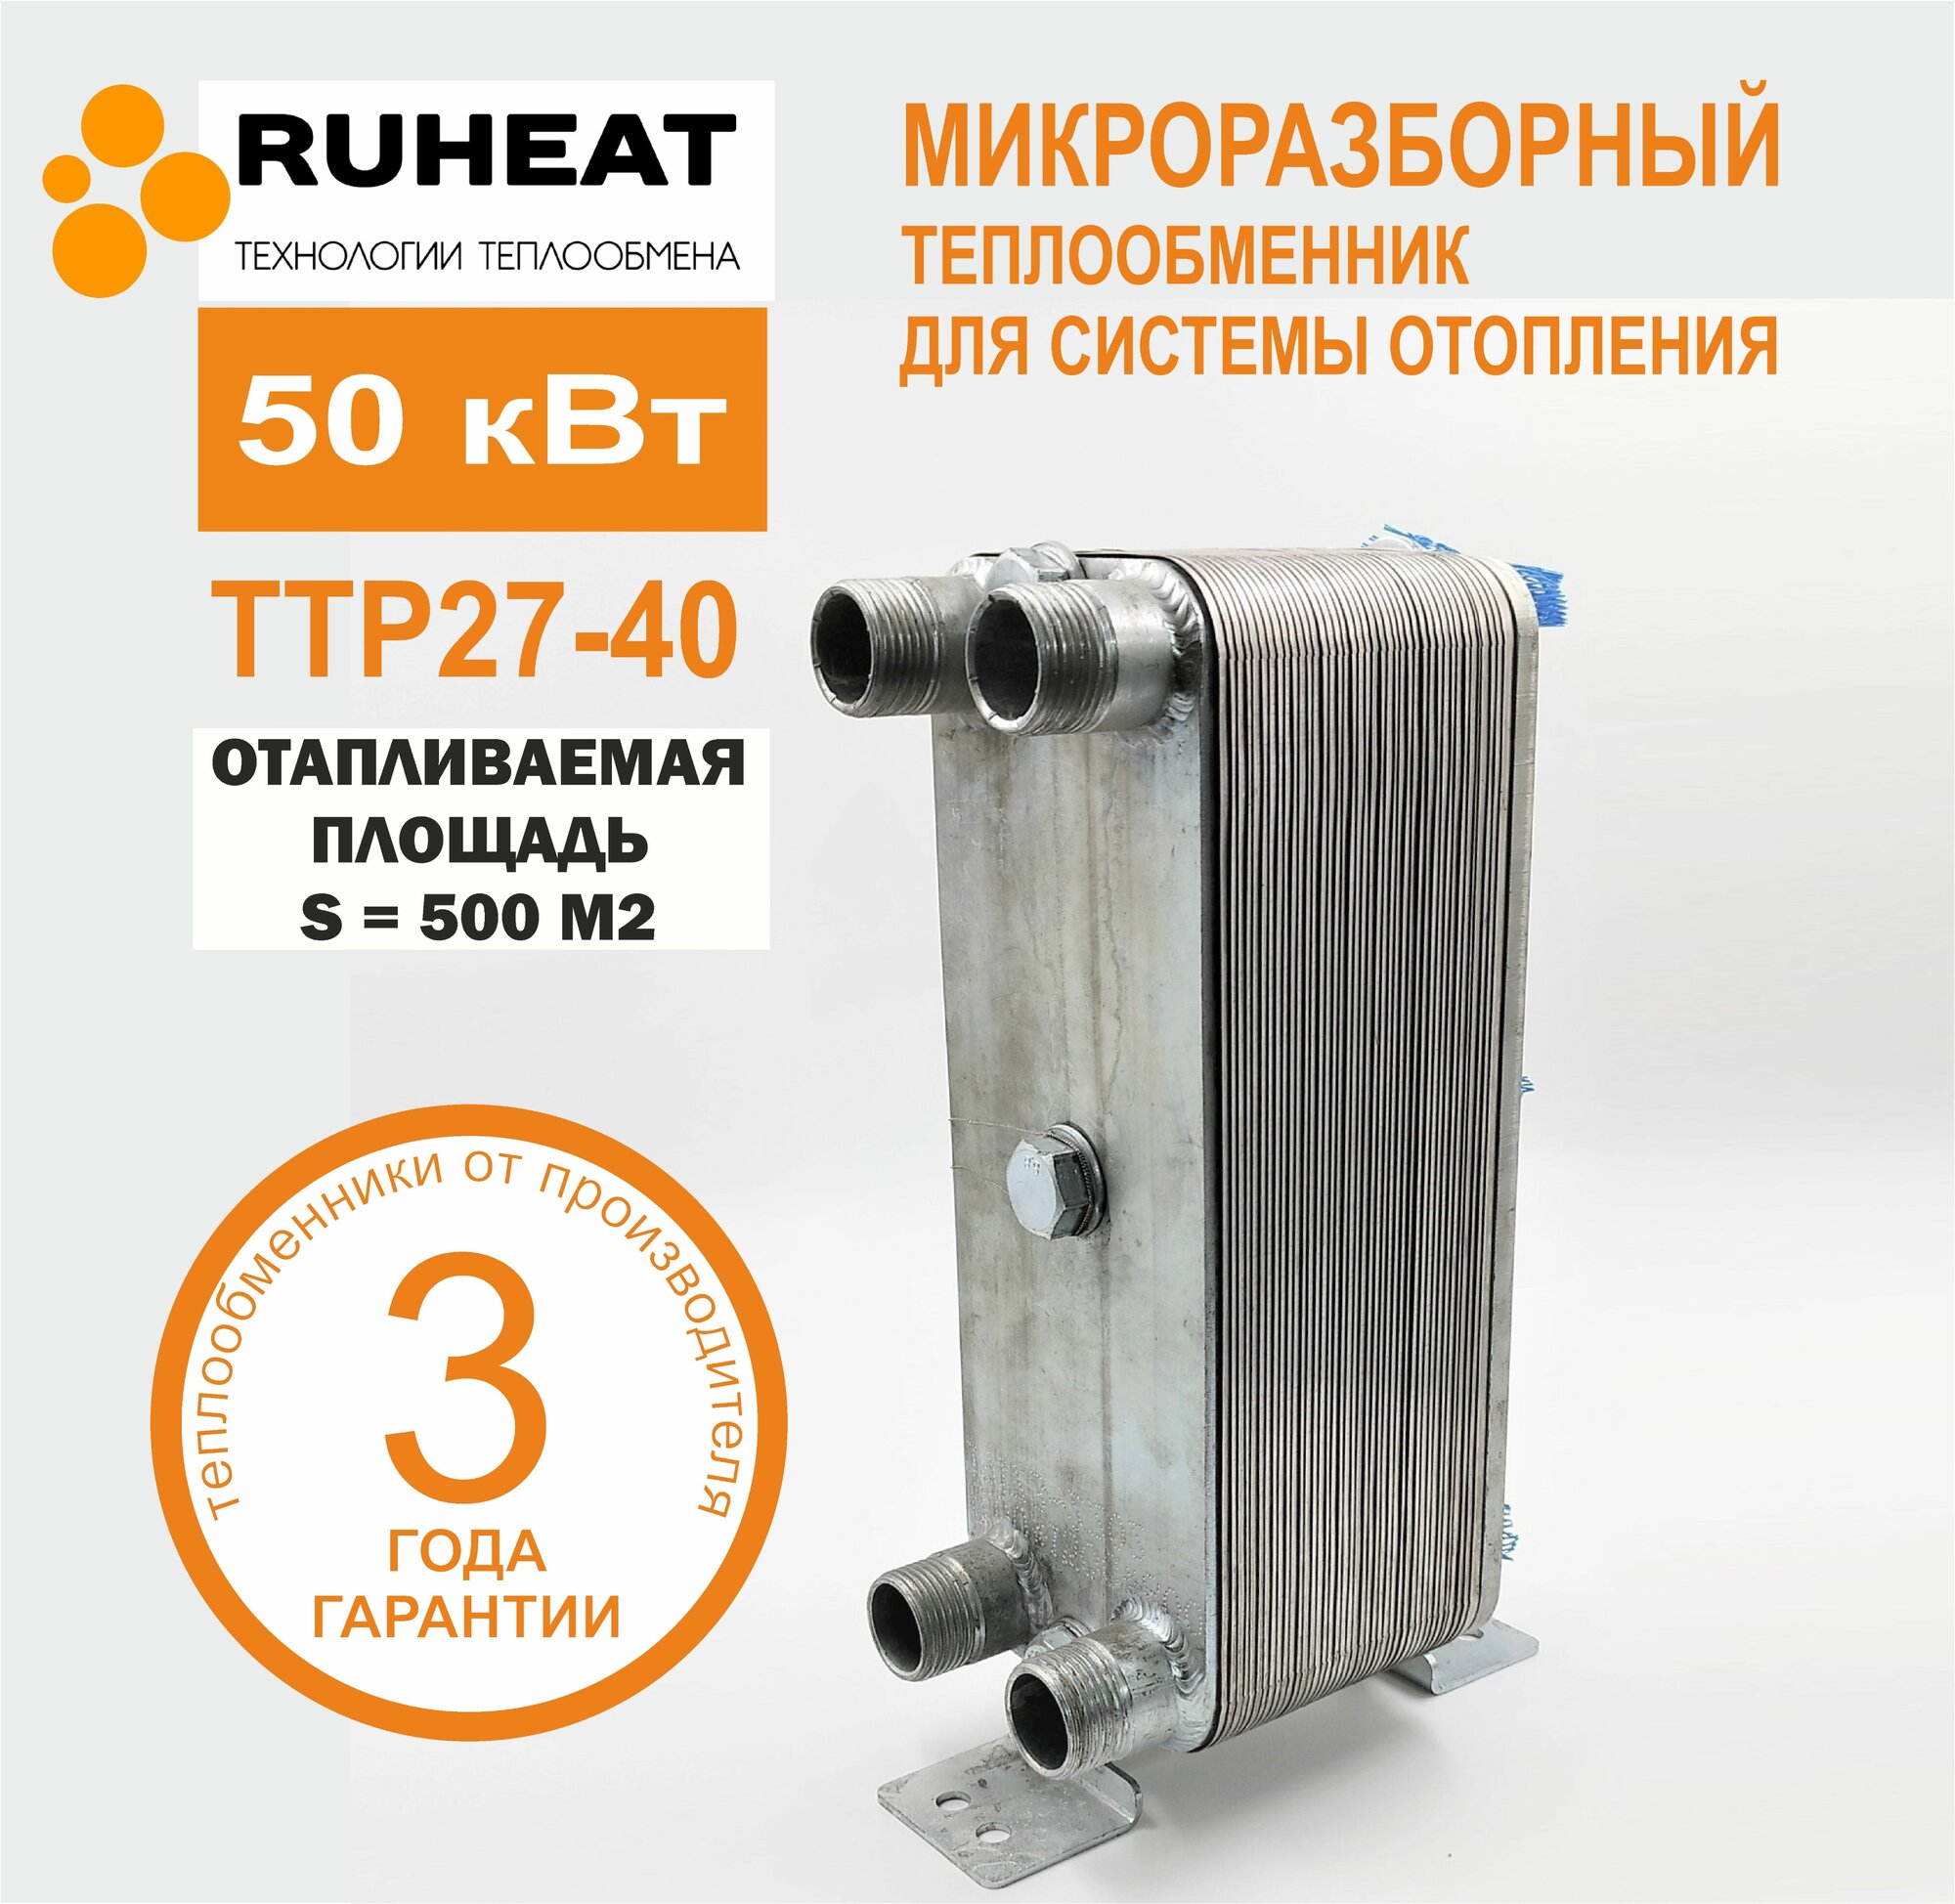 Микро разборный пластинчатый теплообменник для отопления площади 500м2 - ТТР27-40, 50 кВт